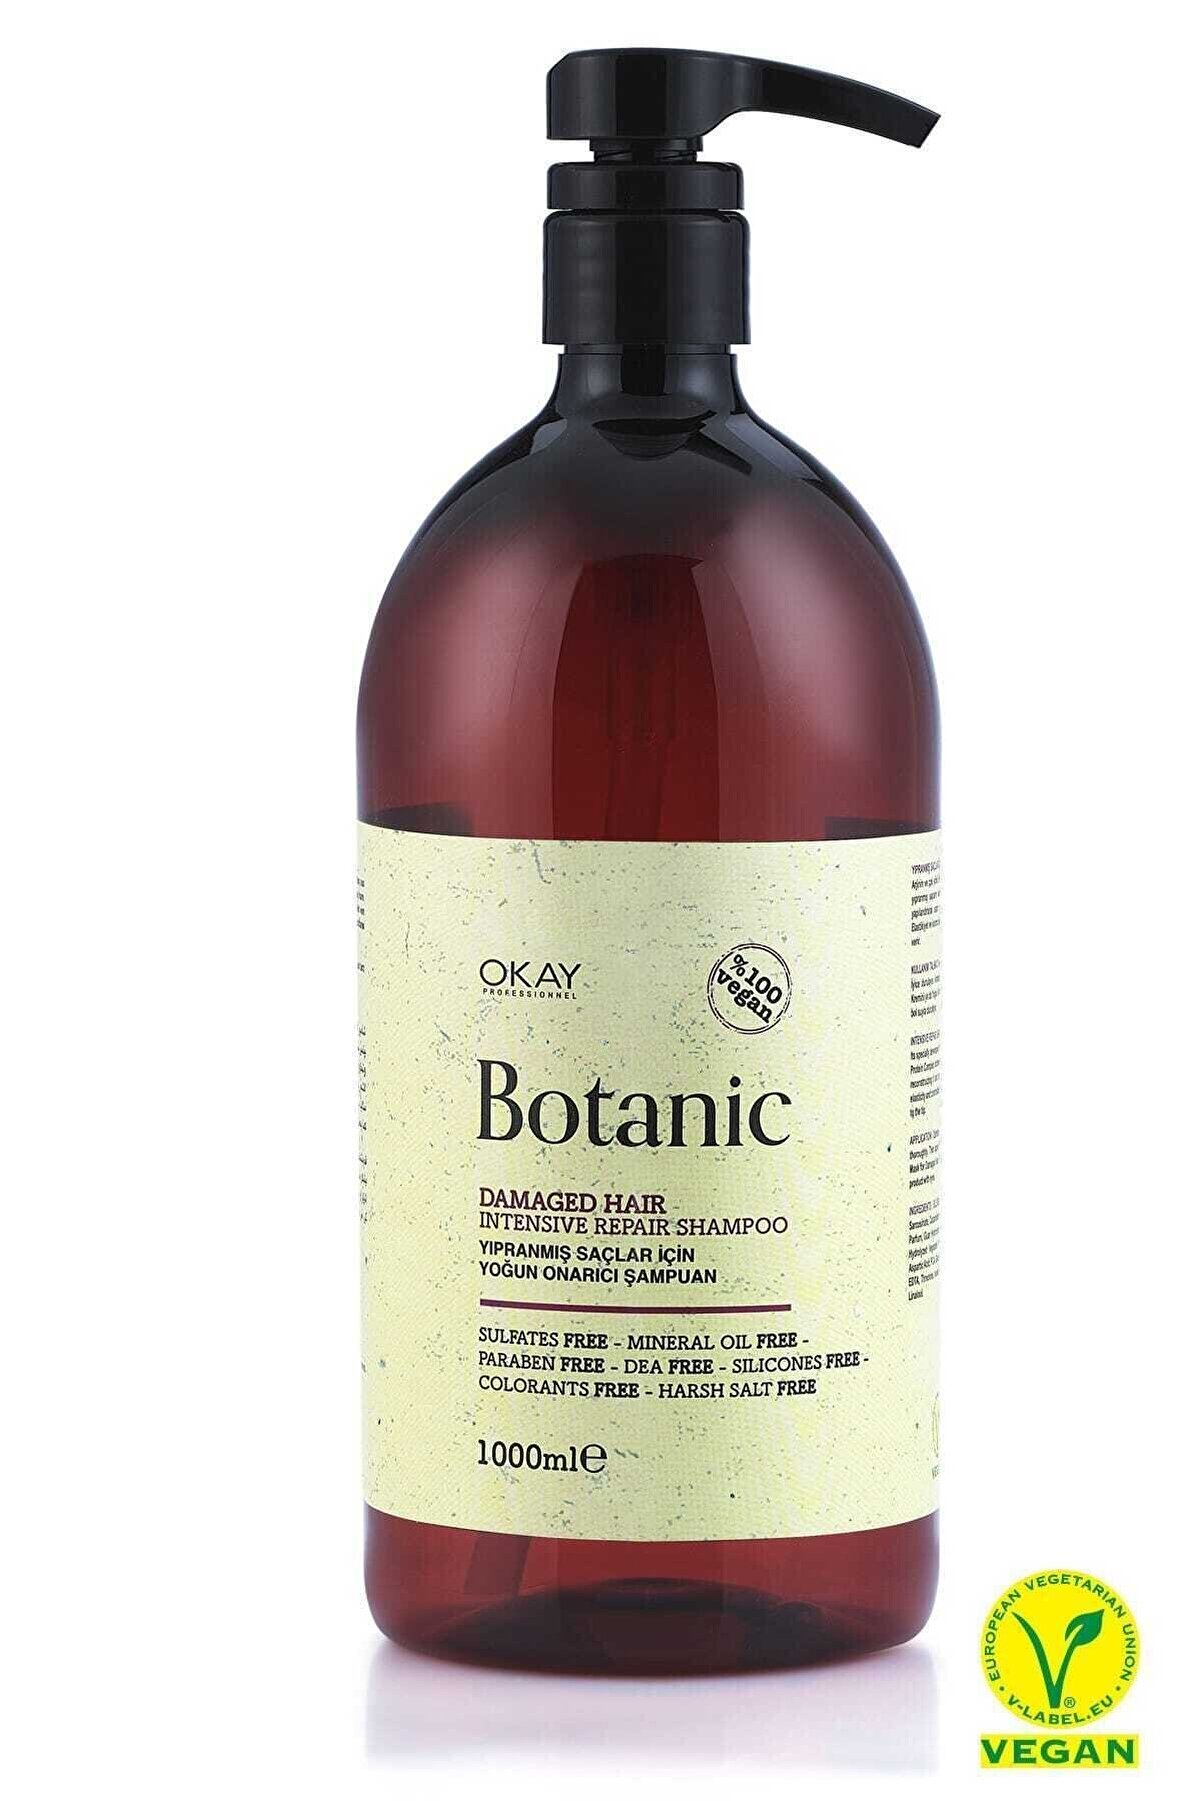 Botanic Yıpranmış Saçlar Için Yoğun Onarıcı Şampuan 1000 Ml